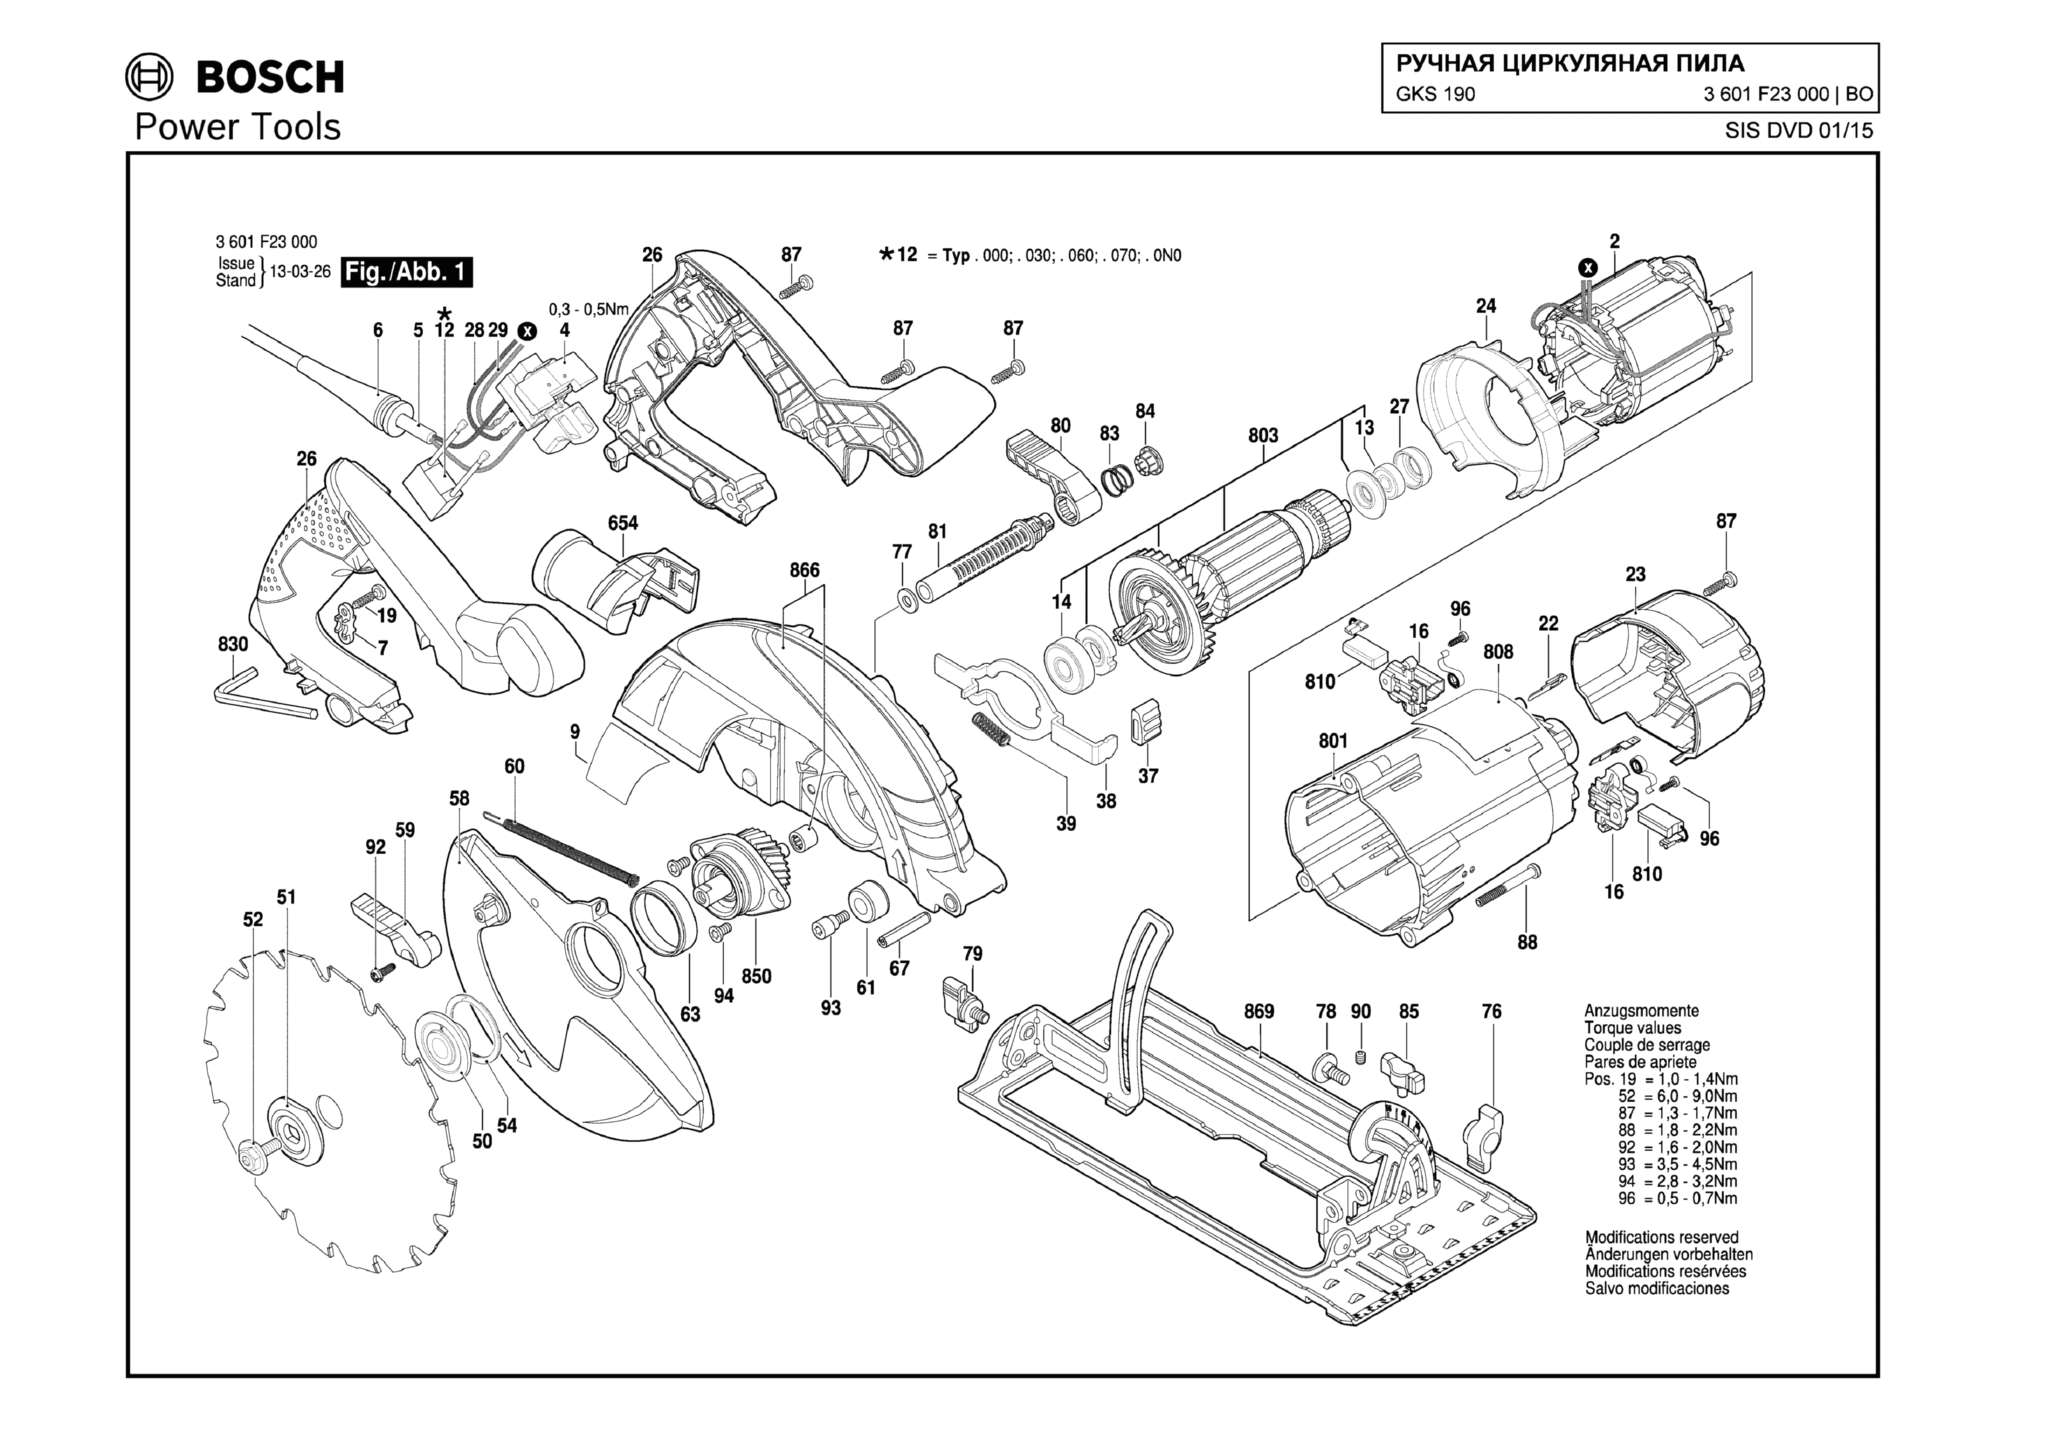 Запчасти, схема и деталировка Bosch GKS 190 (ТИП 3601F23000)